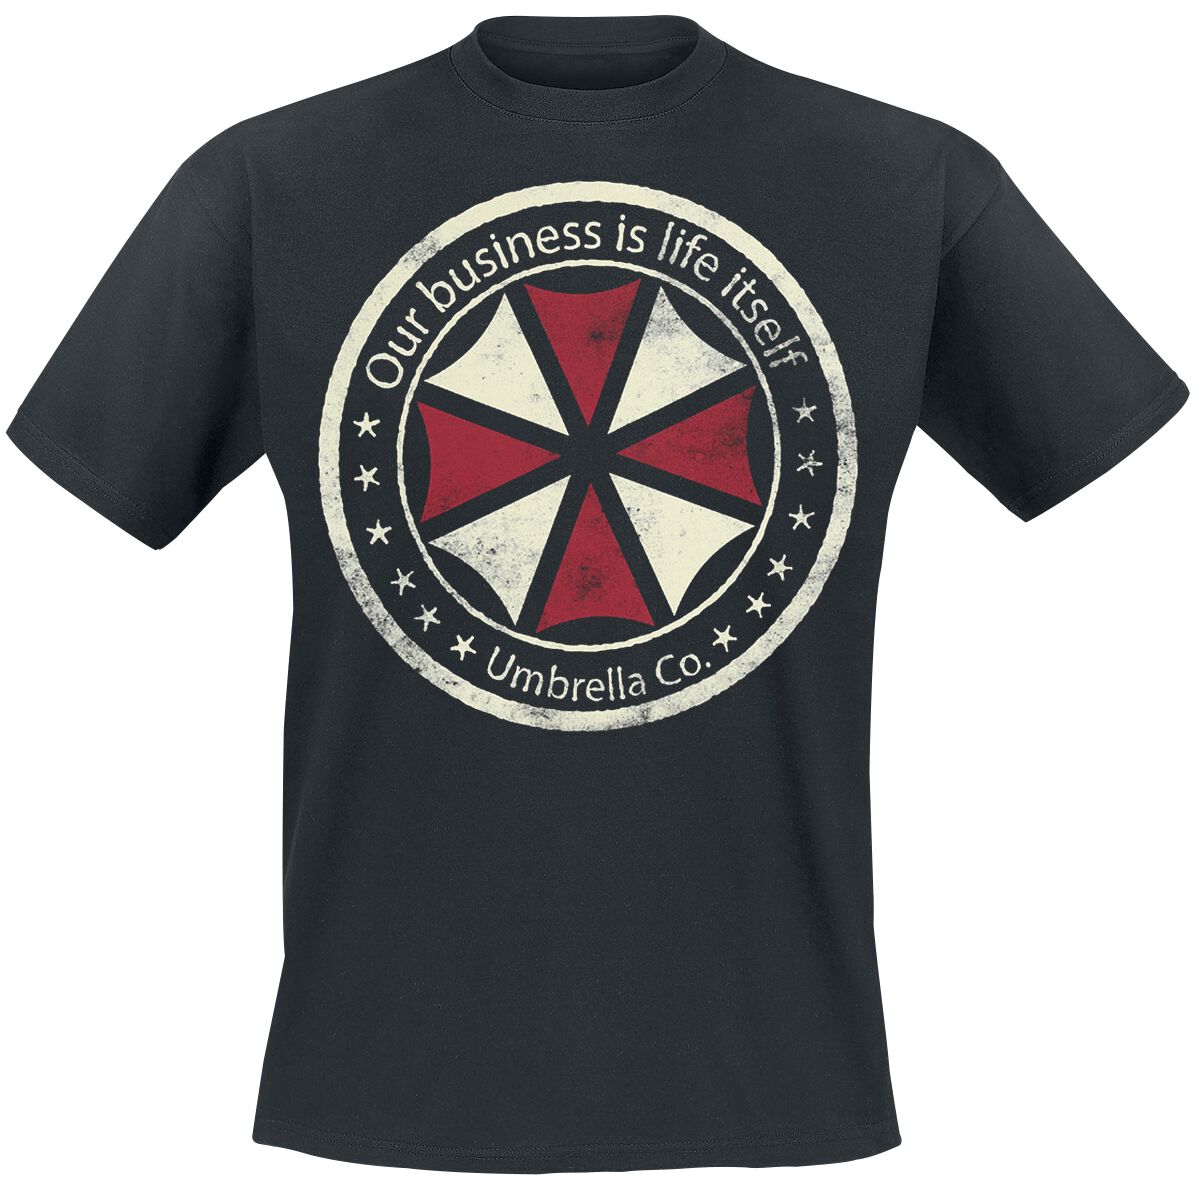 Resident Evil - Gaming T-Shirt - Umbrella Co. - Our Business Is Life Itself - S bis XXL - für Männer - Größe XL - schwarz